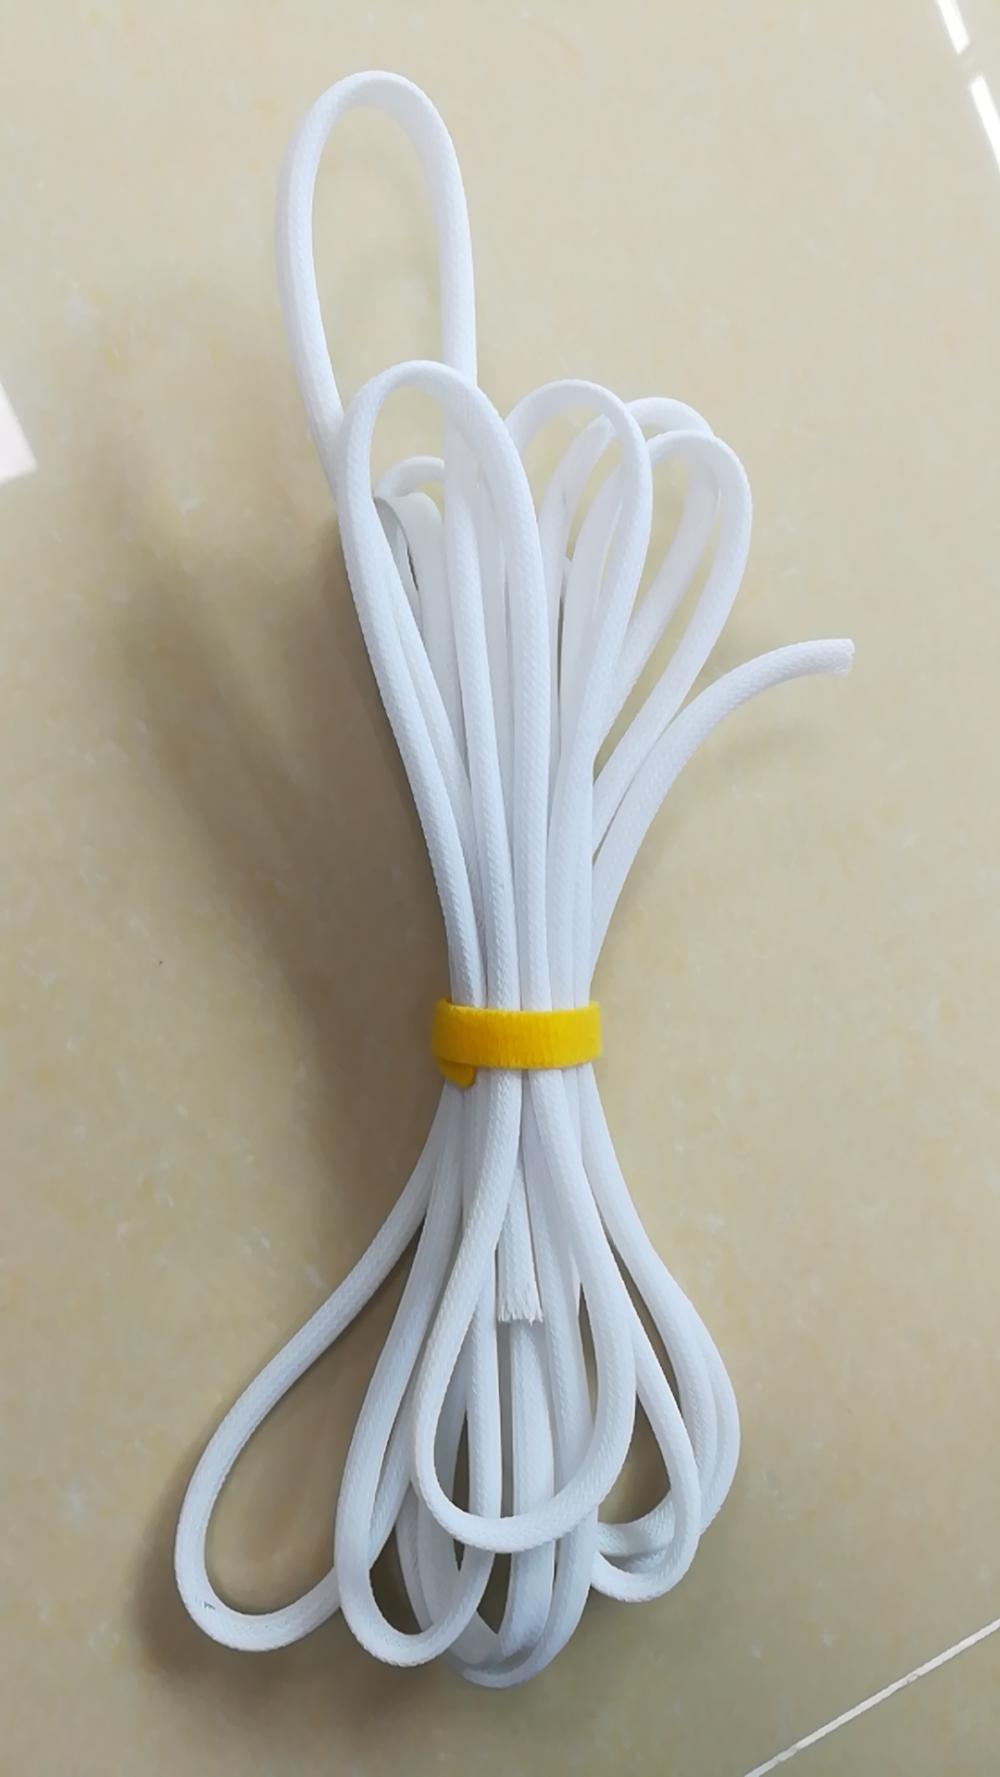 Flame Detrantant Flexible Pet Expandable Cable織機